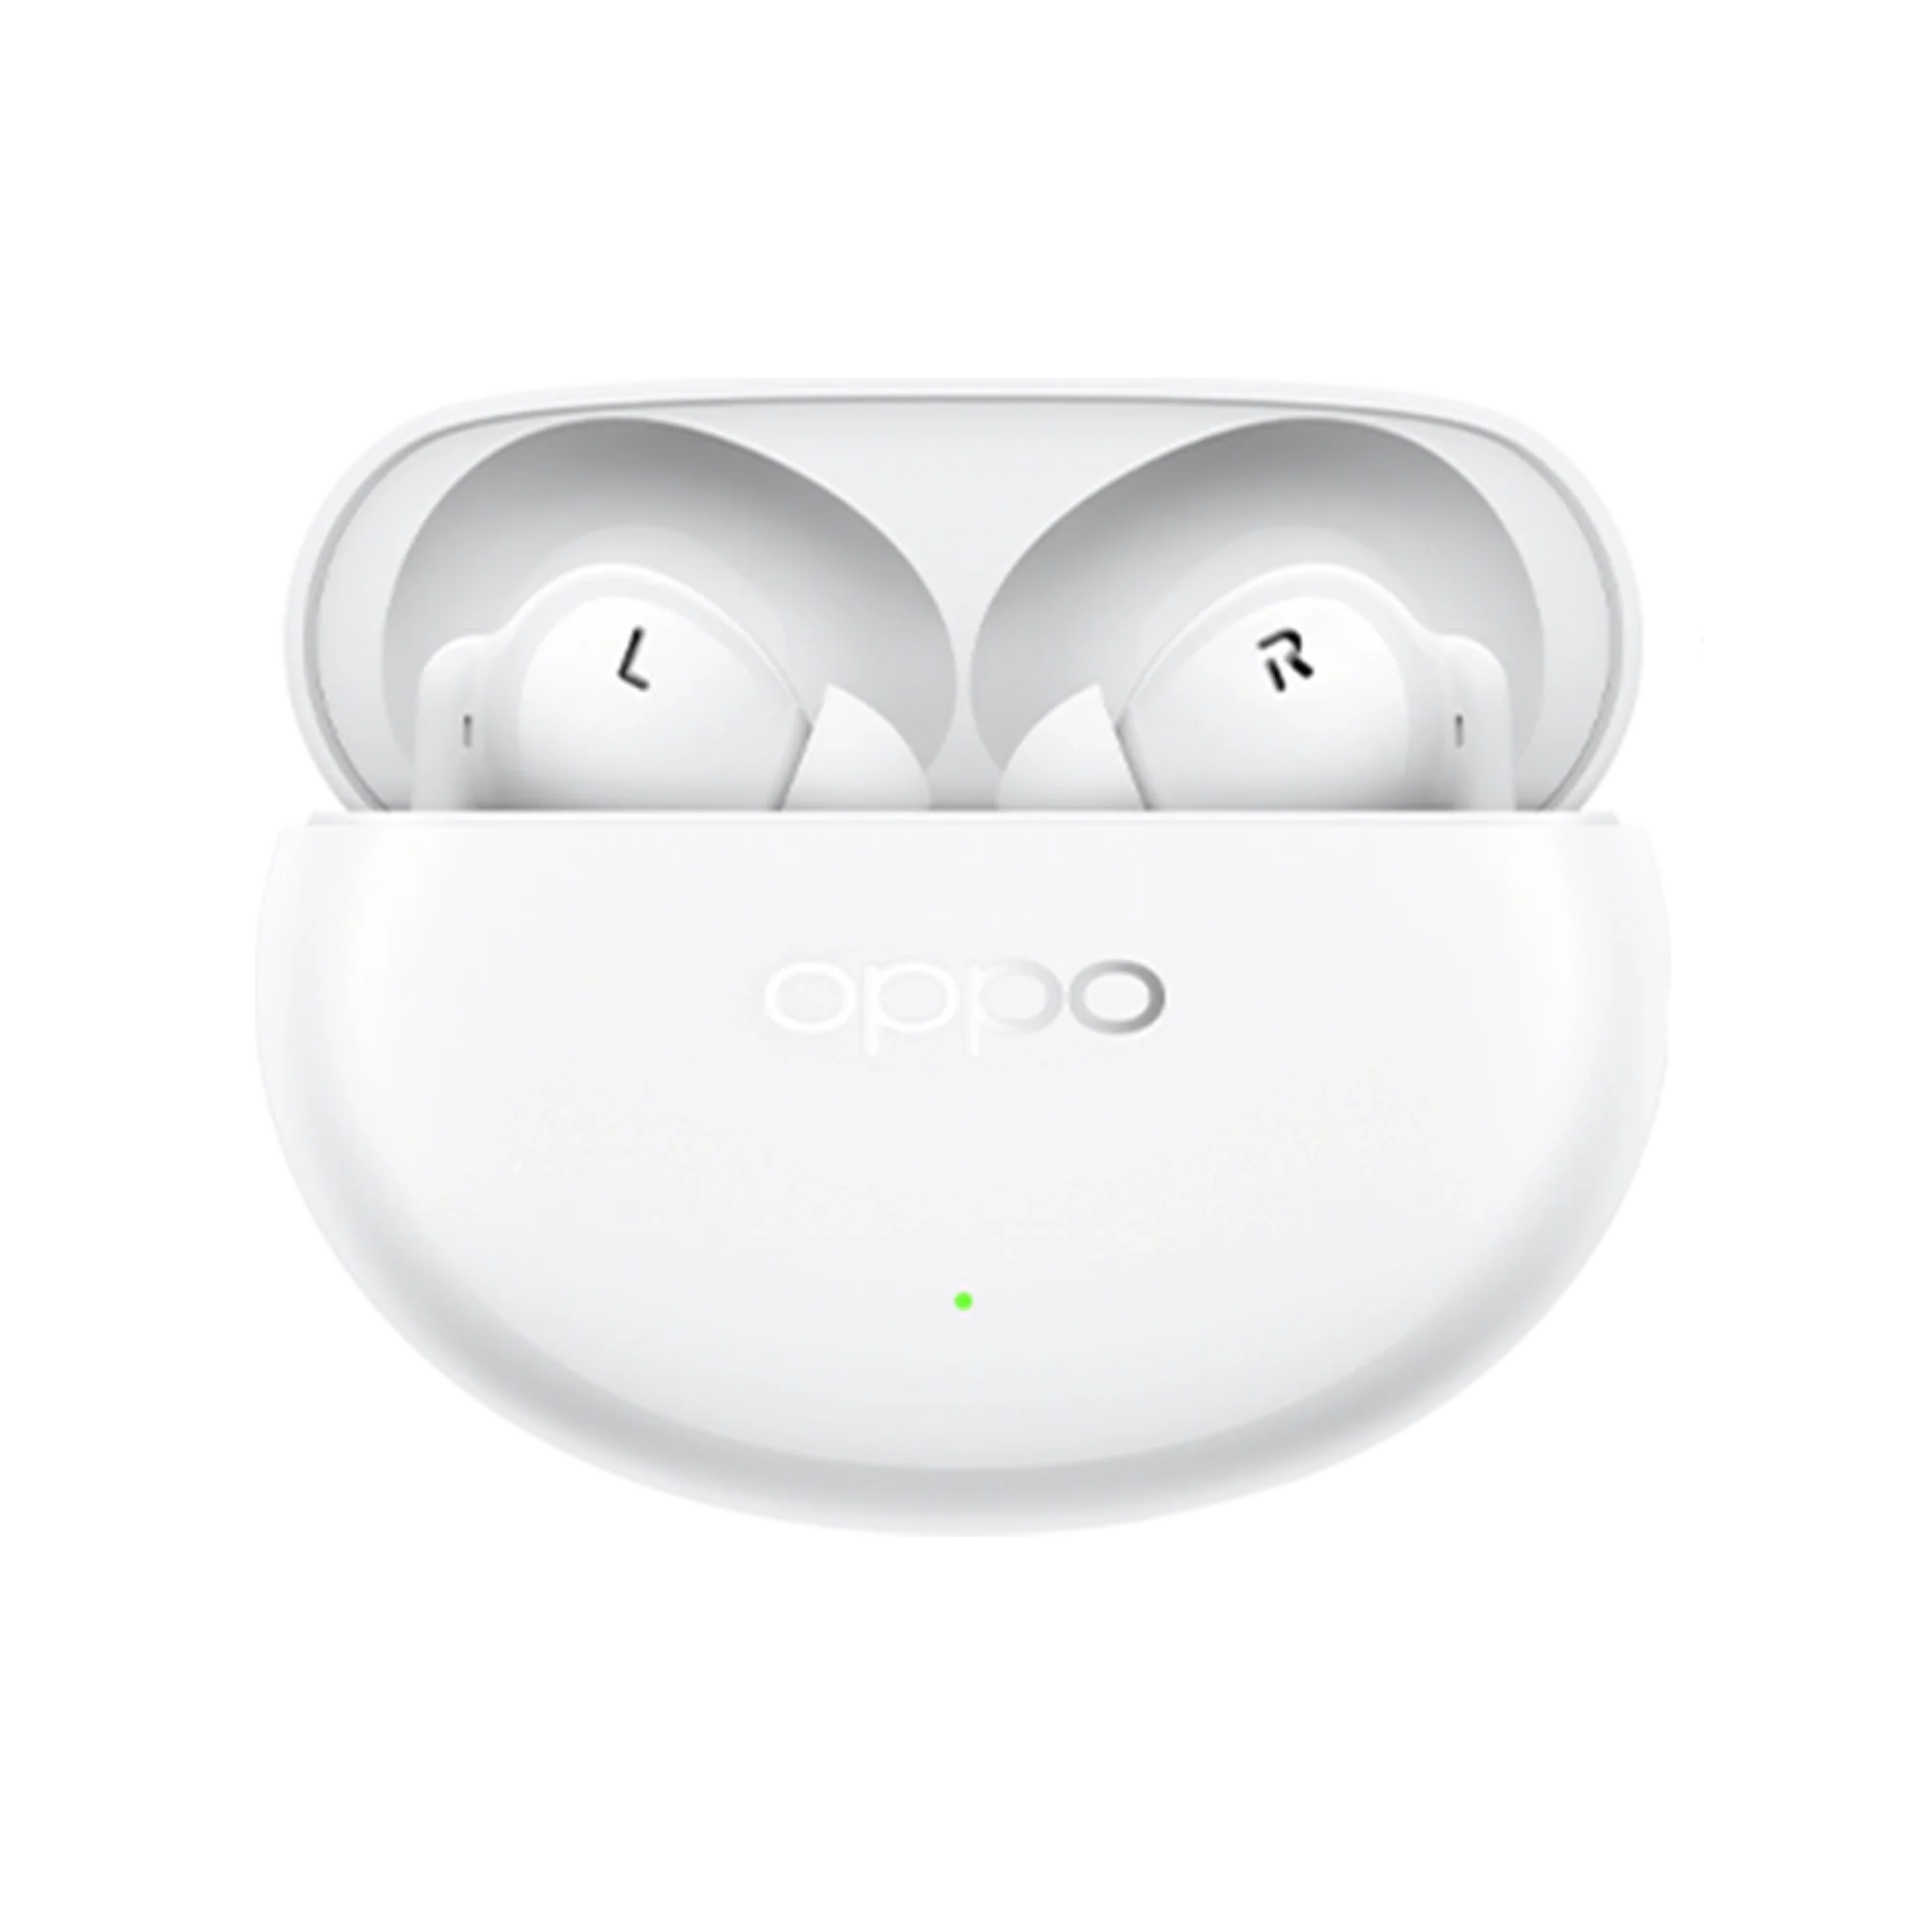 Foto: In-ear-kopfhoerer Oppo Enco Air 4 Pro